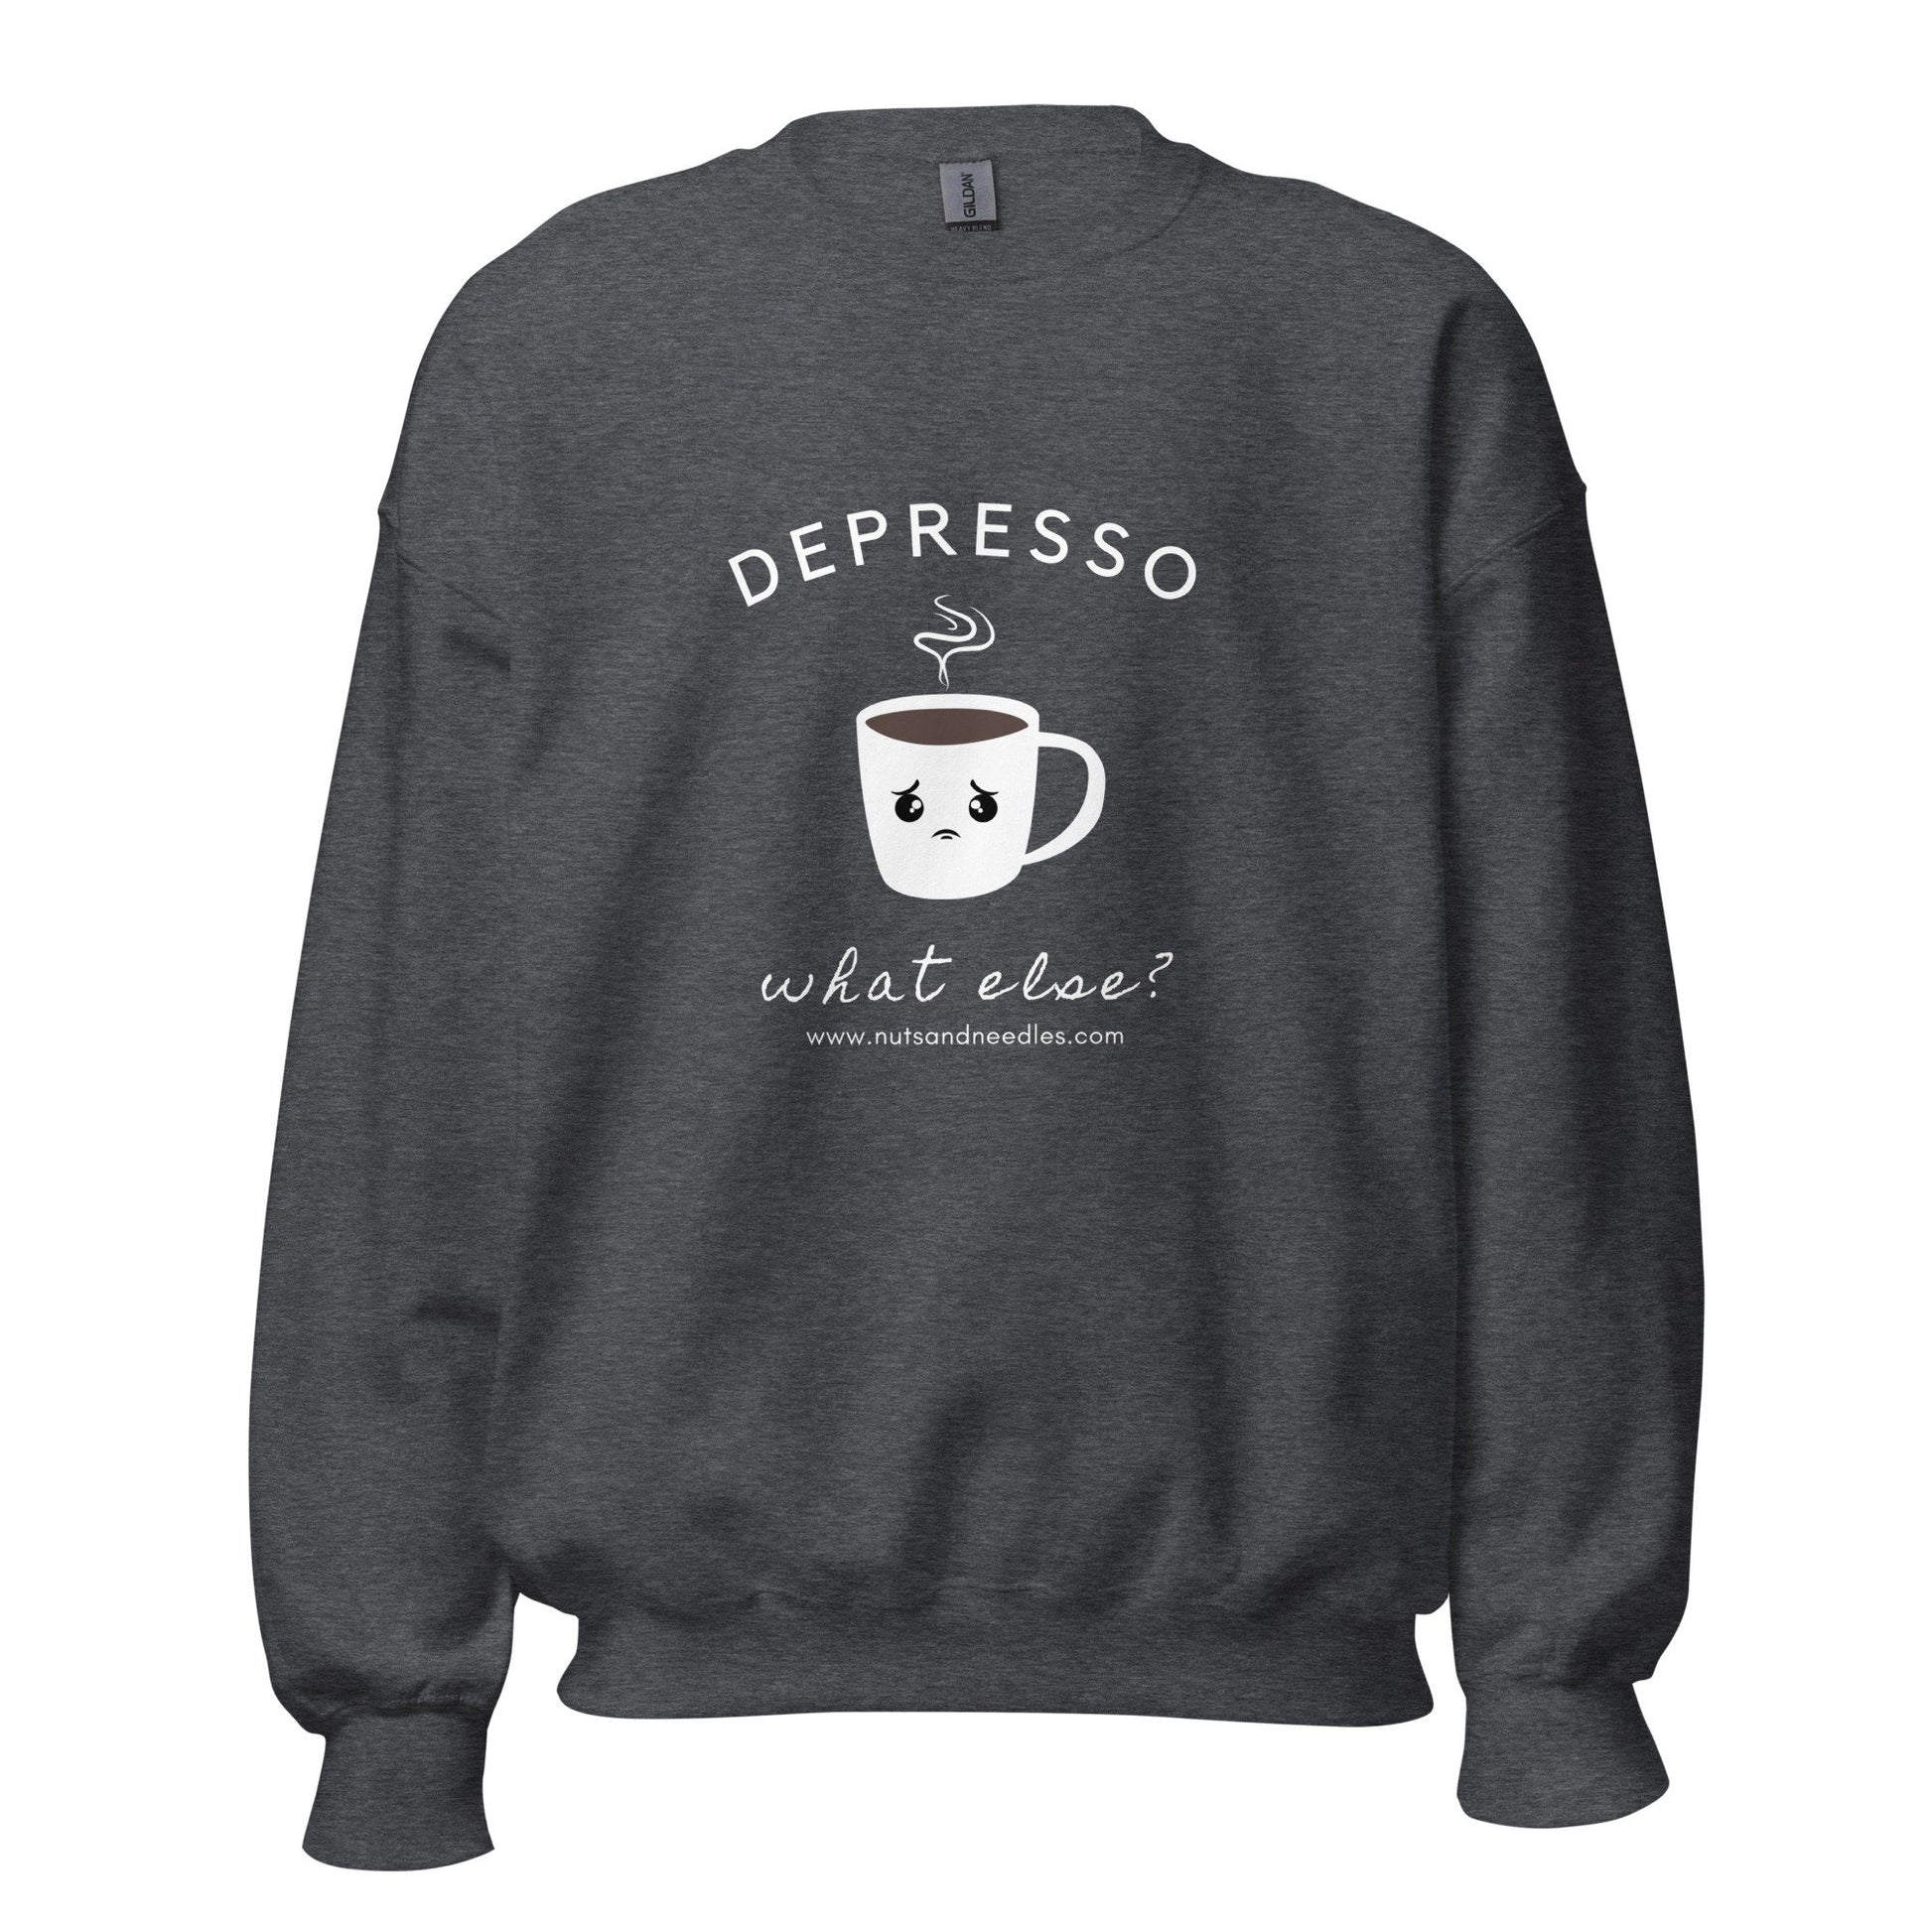 Mental Health Sweatshirt &#39;Depresso What Else?&#39;, Unisex Sweater, Depression Awareness, Mental Health Awareness, Coffee Hoodie